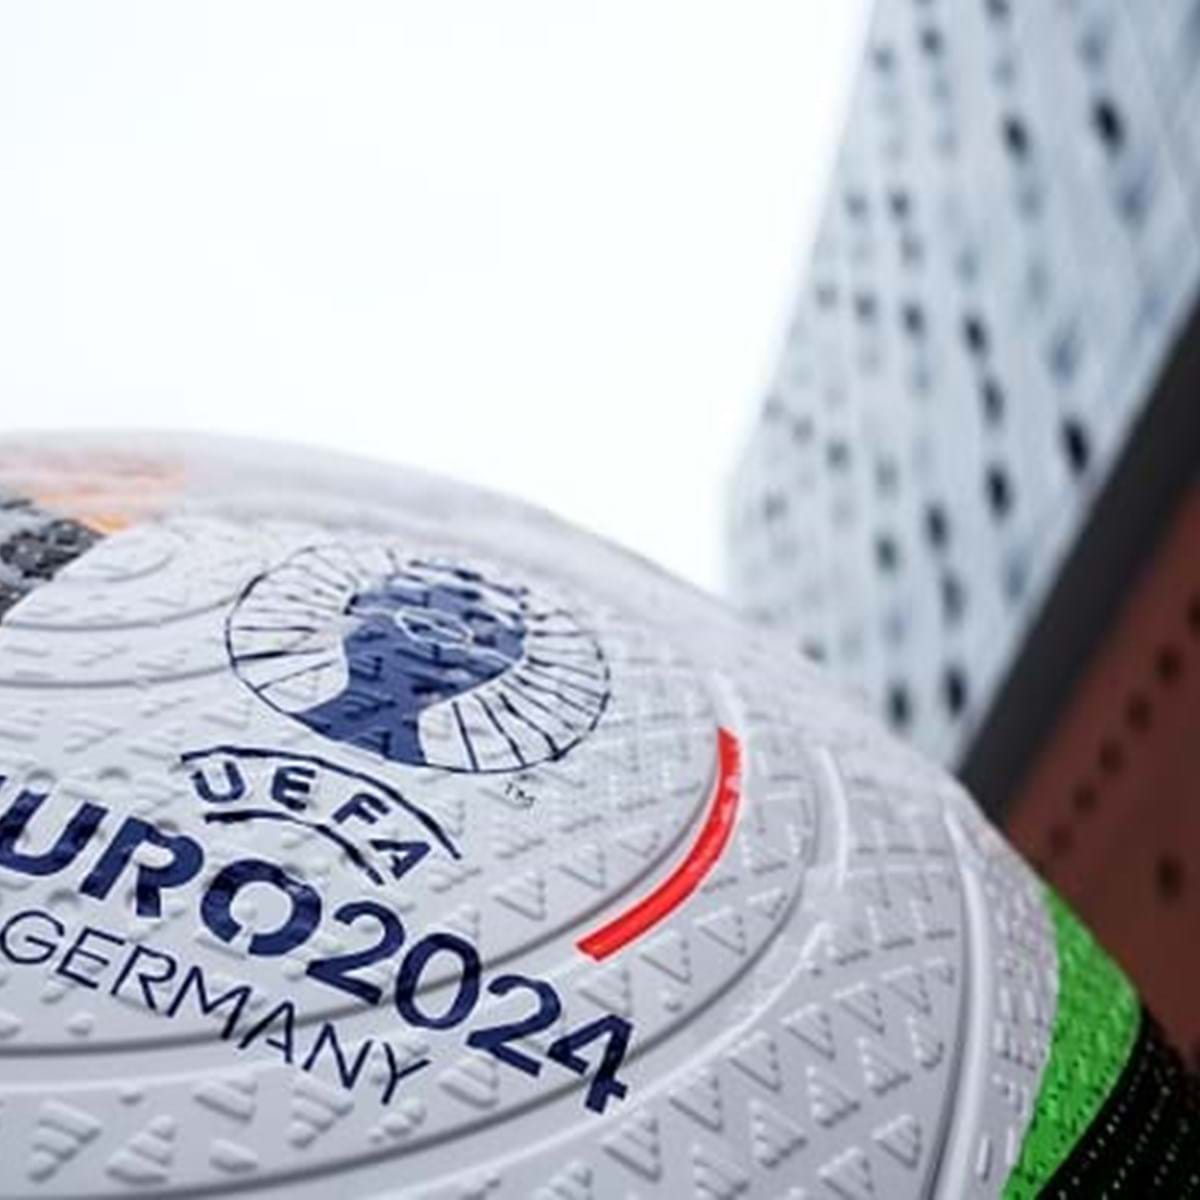 Onde vão passar os jogos do Euro 2024 em canal aberto? RTP, SIC e